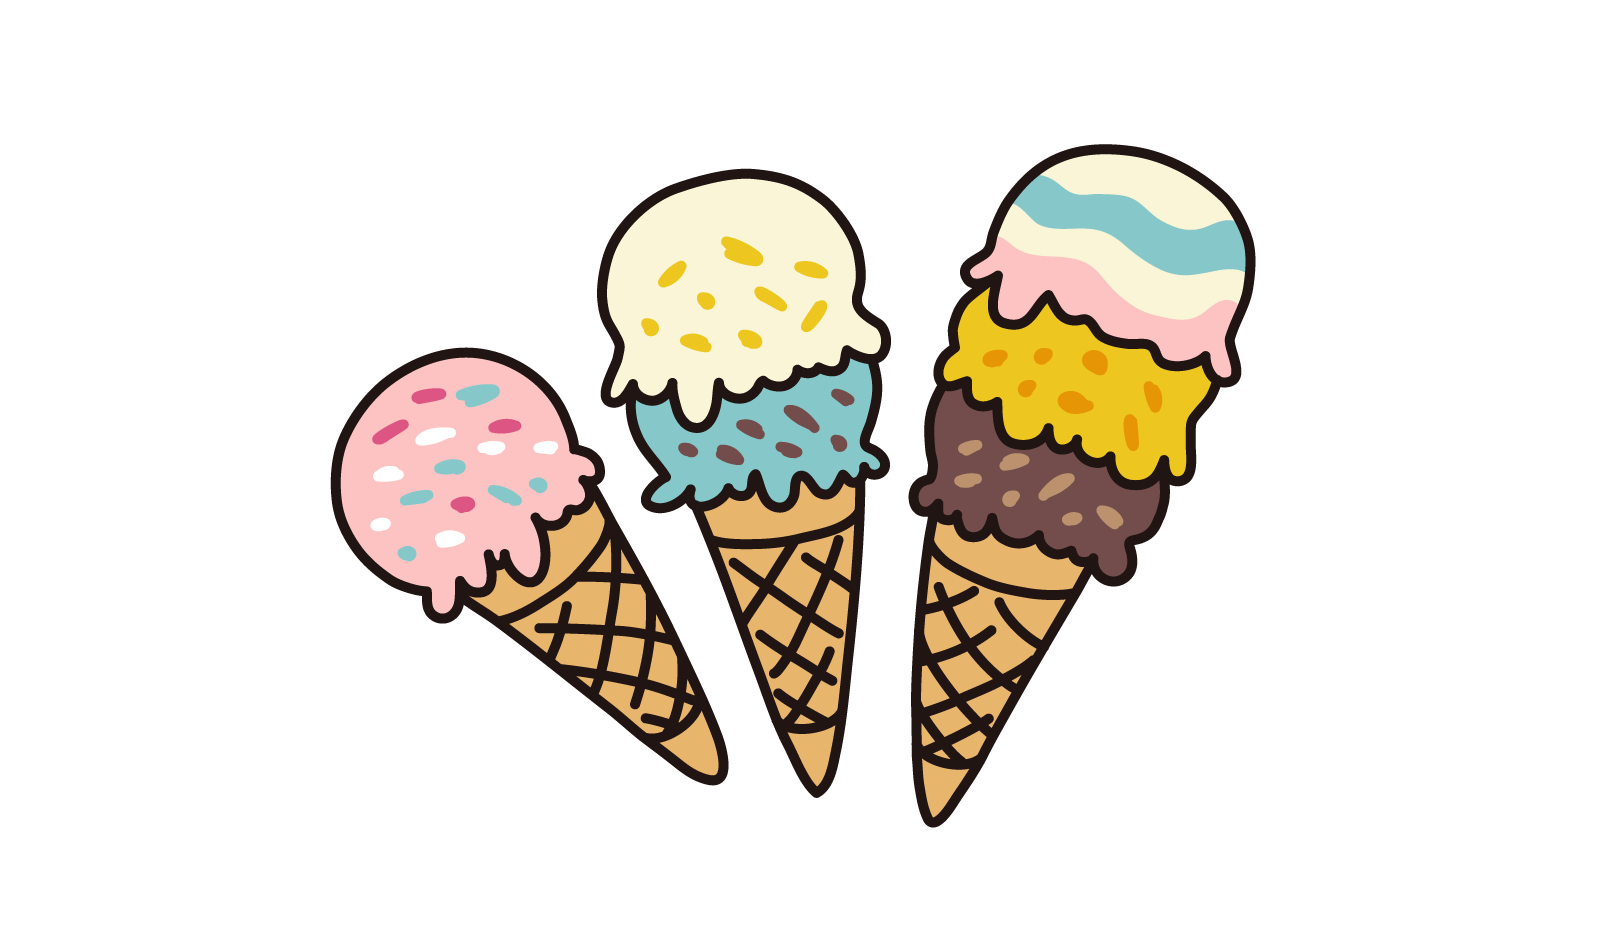 いろいろなアイスクリーム1